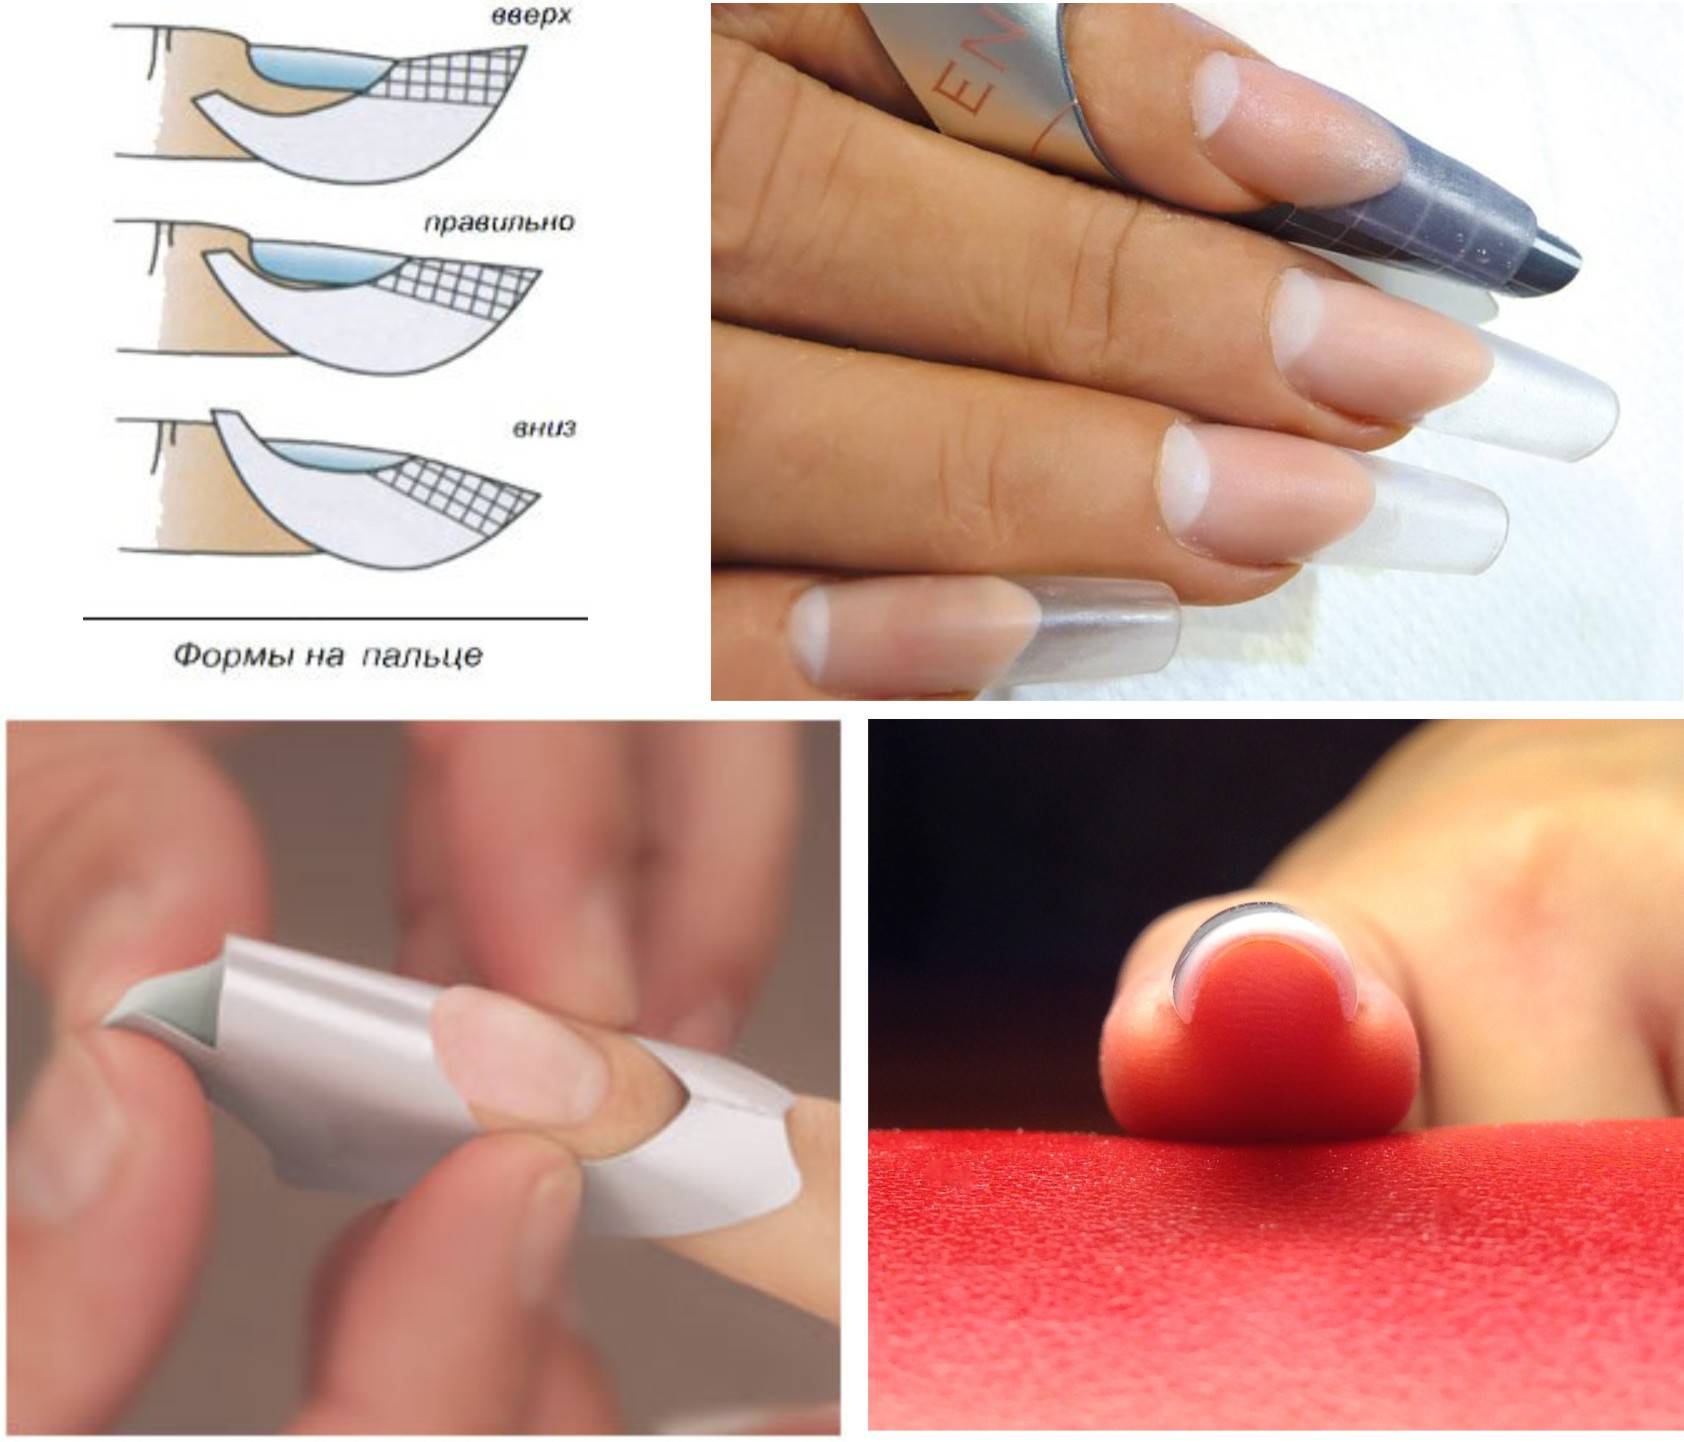 Модный нежный маникюр на миндалевидные ногти 2020: фото идеи